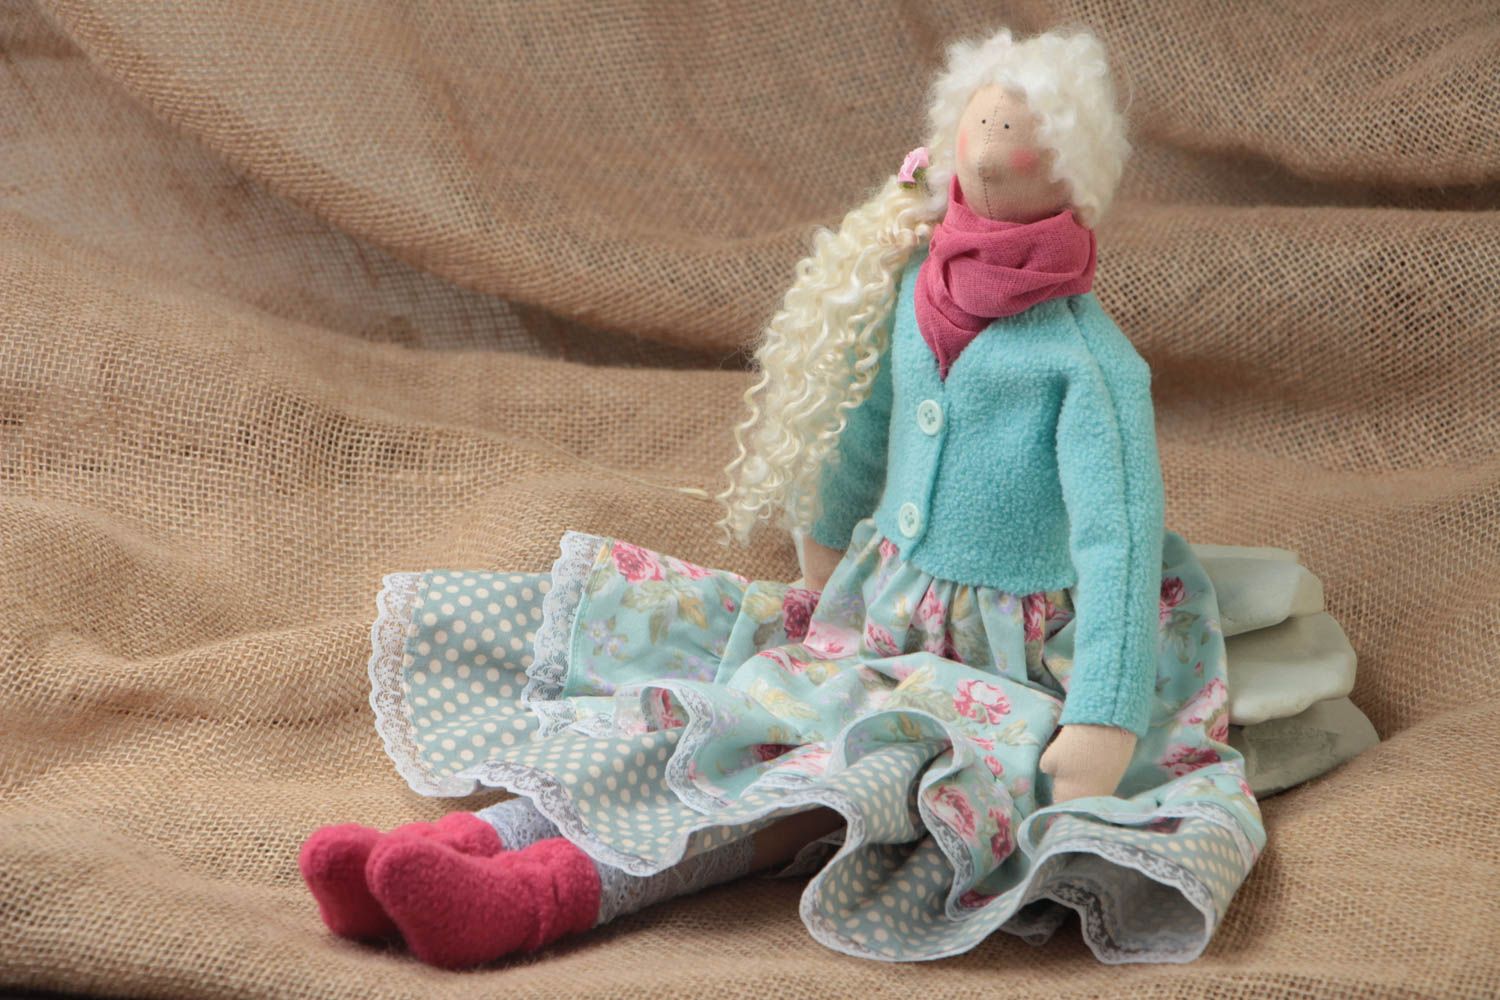 Игрушка кукла из ткани в голубом платье с белыми волосами красивая ручной работы фото 1